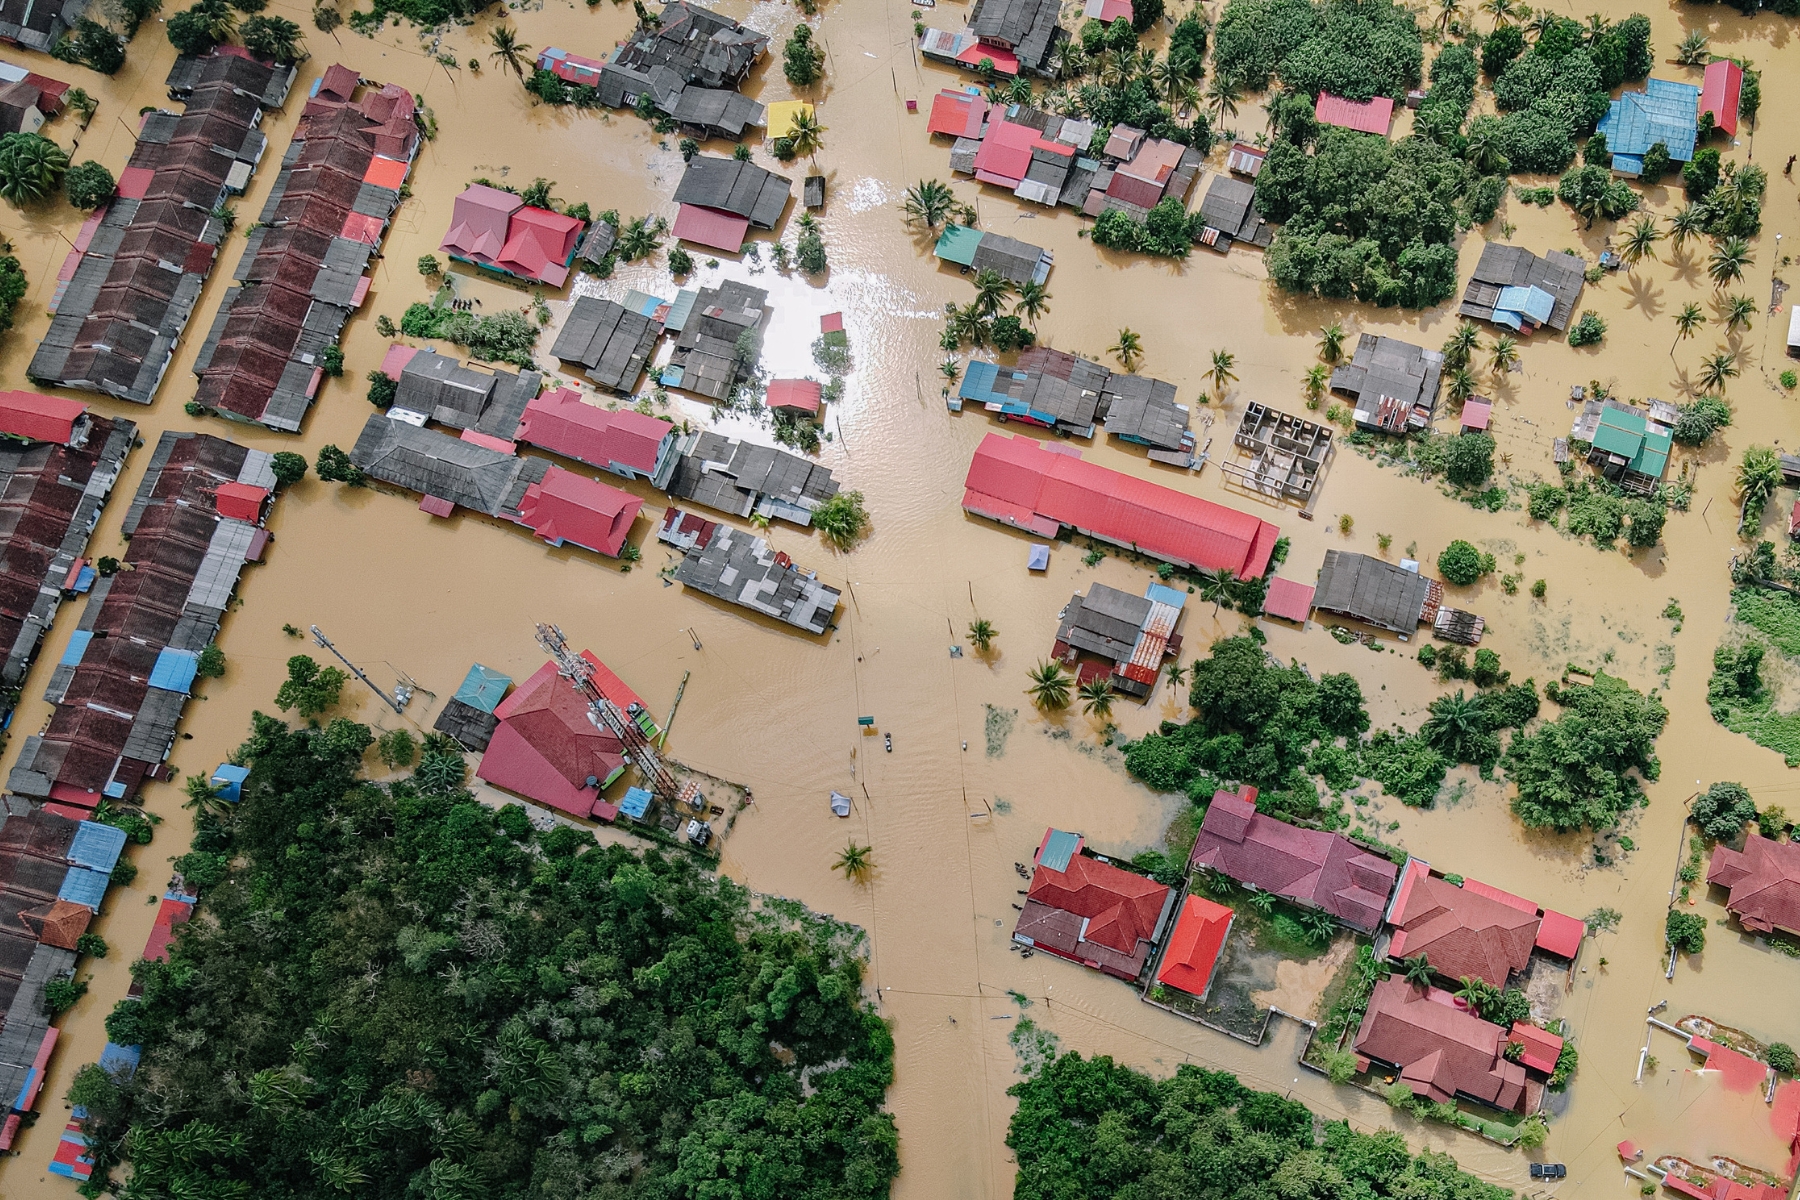 Entenda as diferenças entre enchente, inundação e alagamento, e como esses eventos impactam áreas rurais e urbanas.